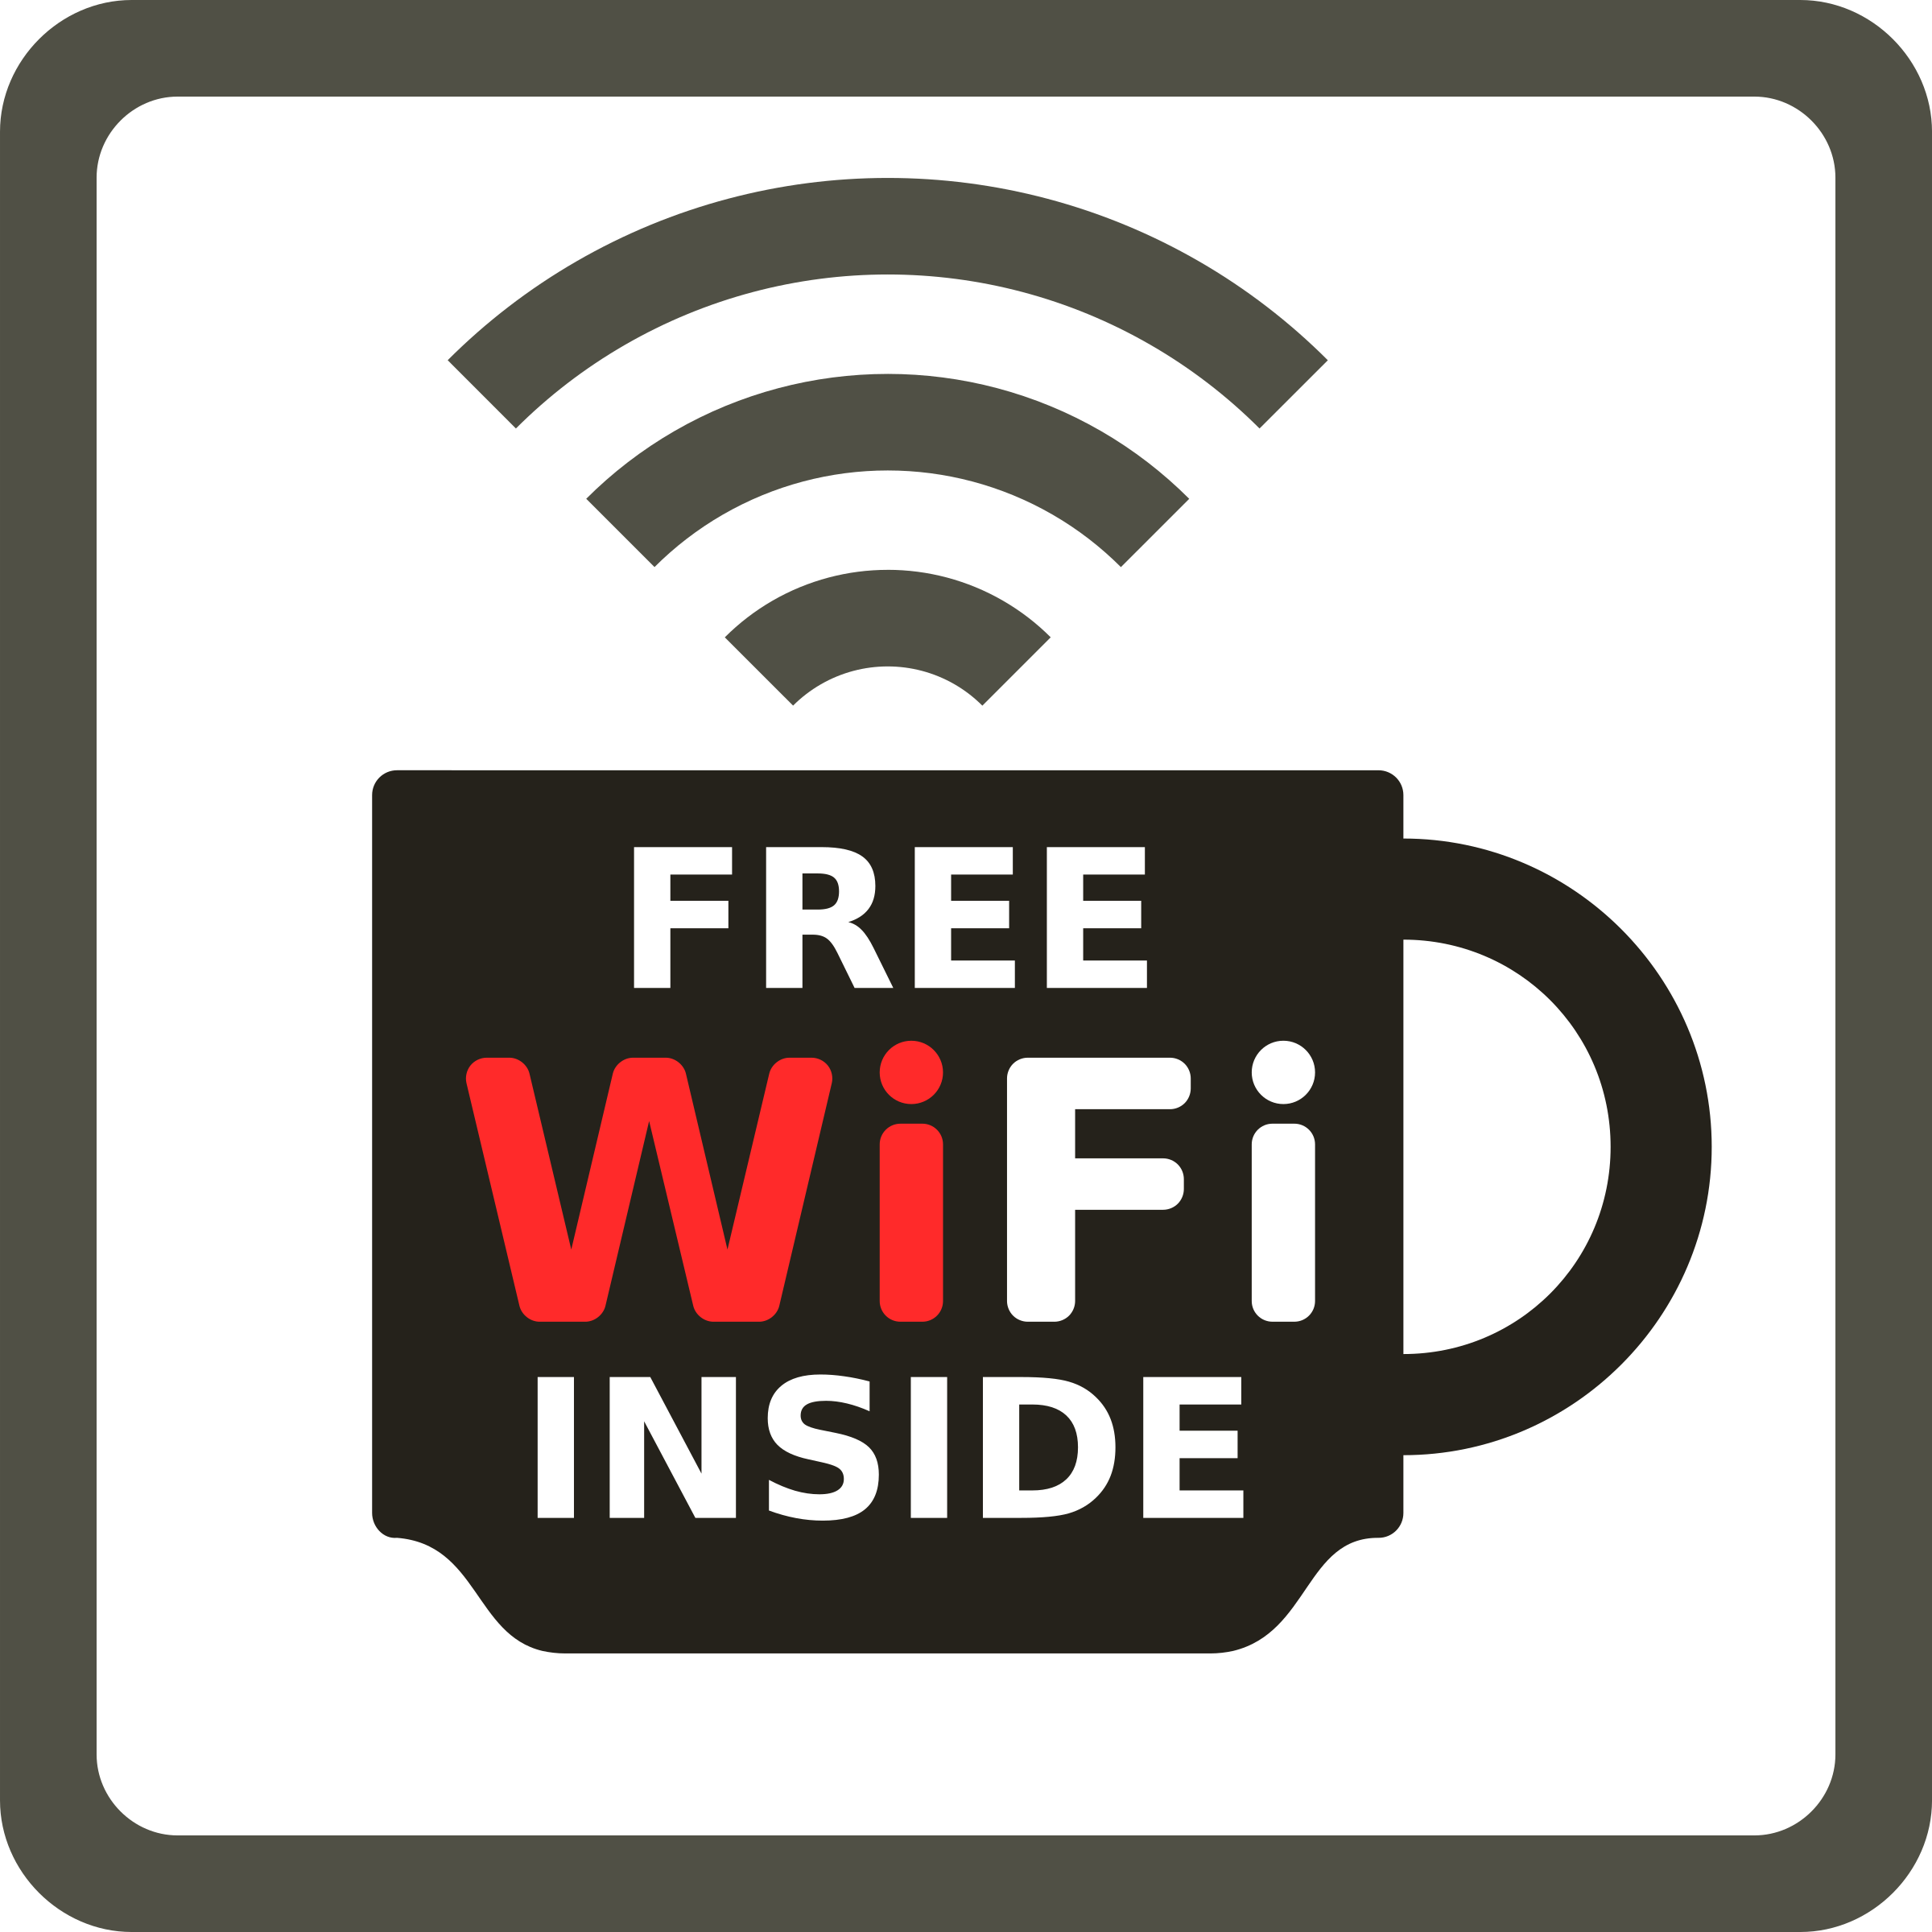 Бесплатный Wi-Fi PNG Image